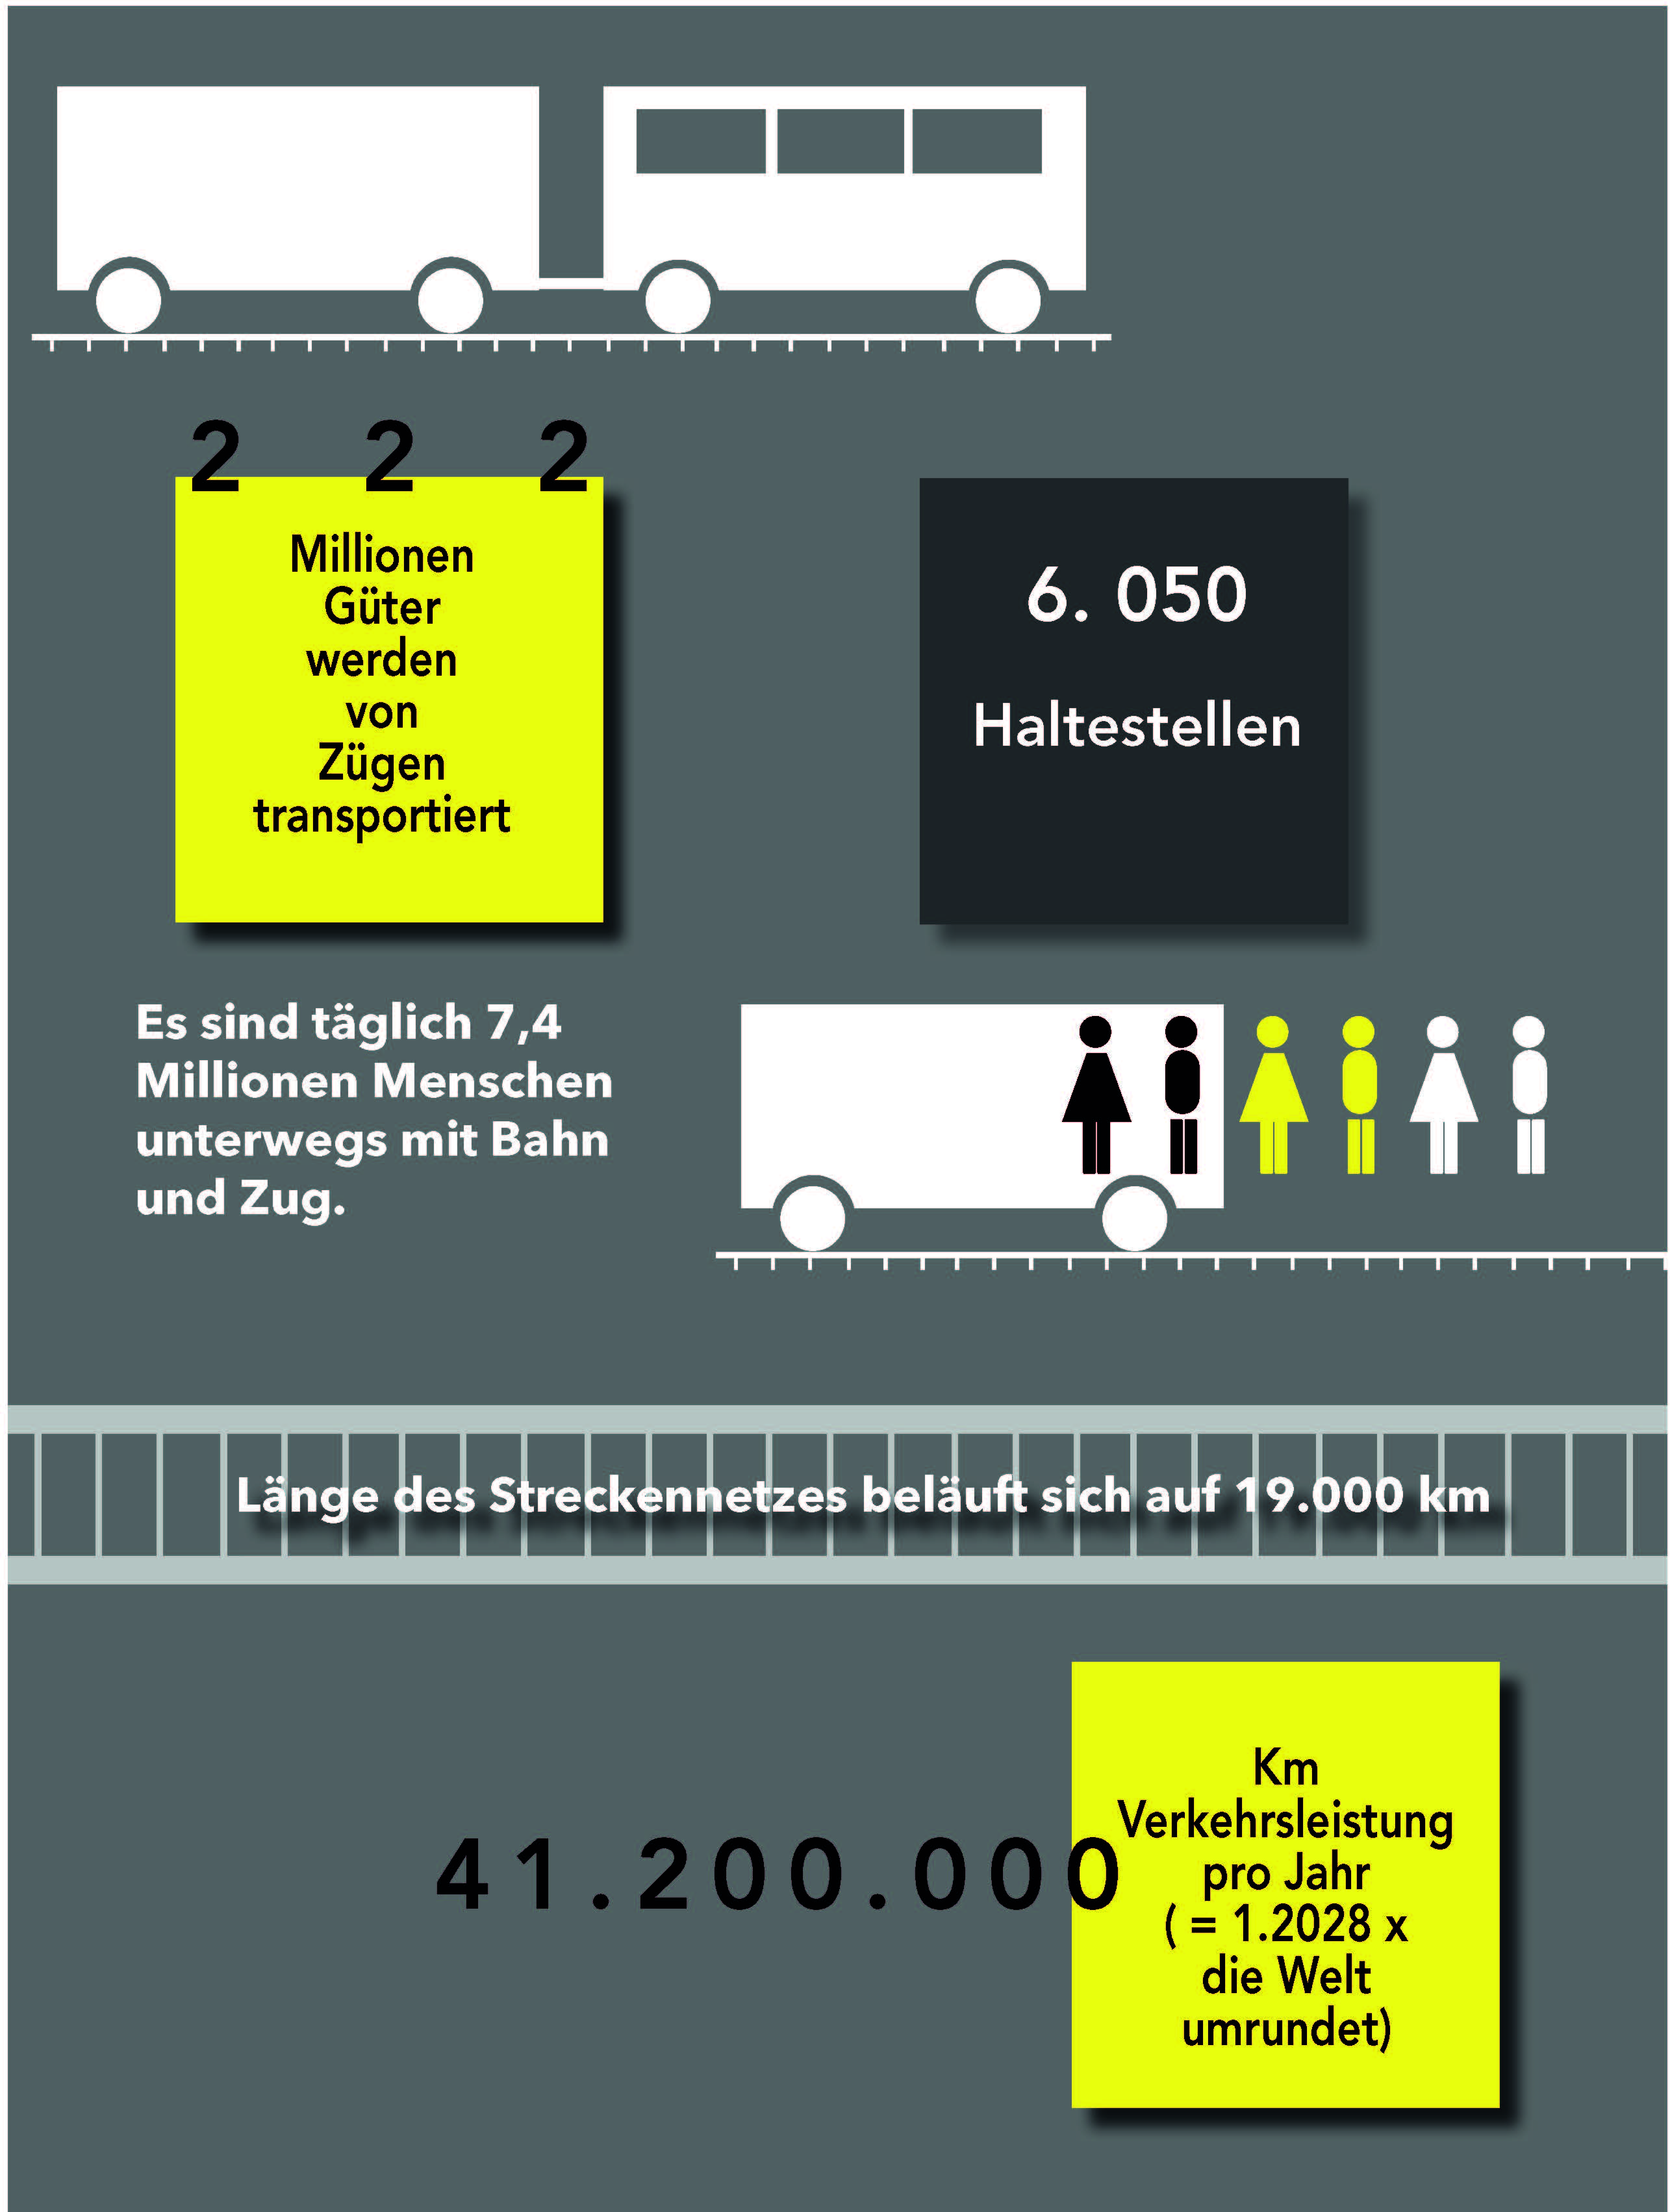 Infografik die über diverse Fakten der Deutschen Bahn aufklärt